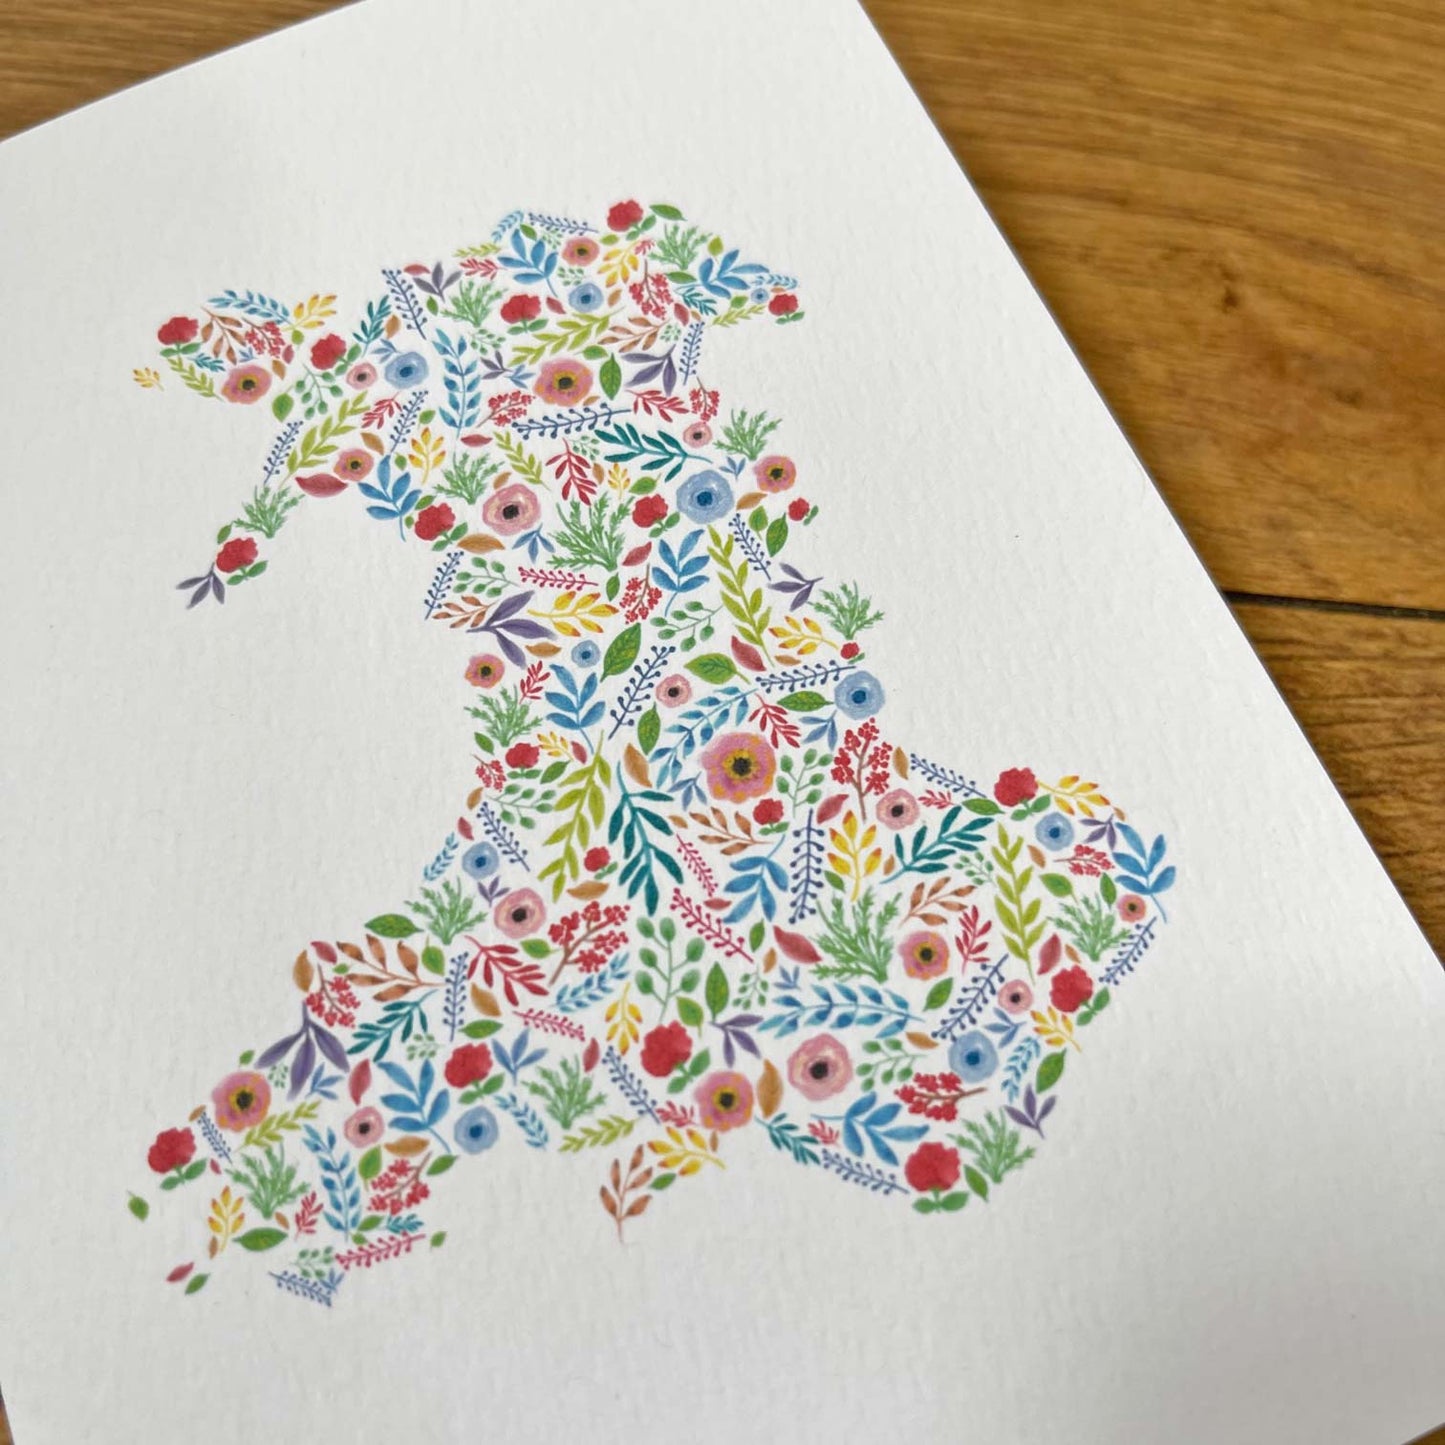 Card - Floral Map of Wales / Cymru